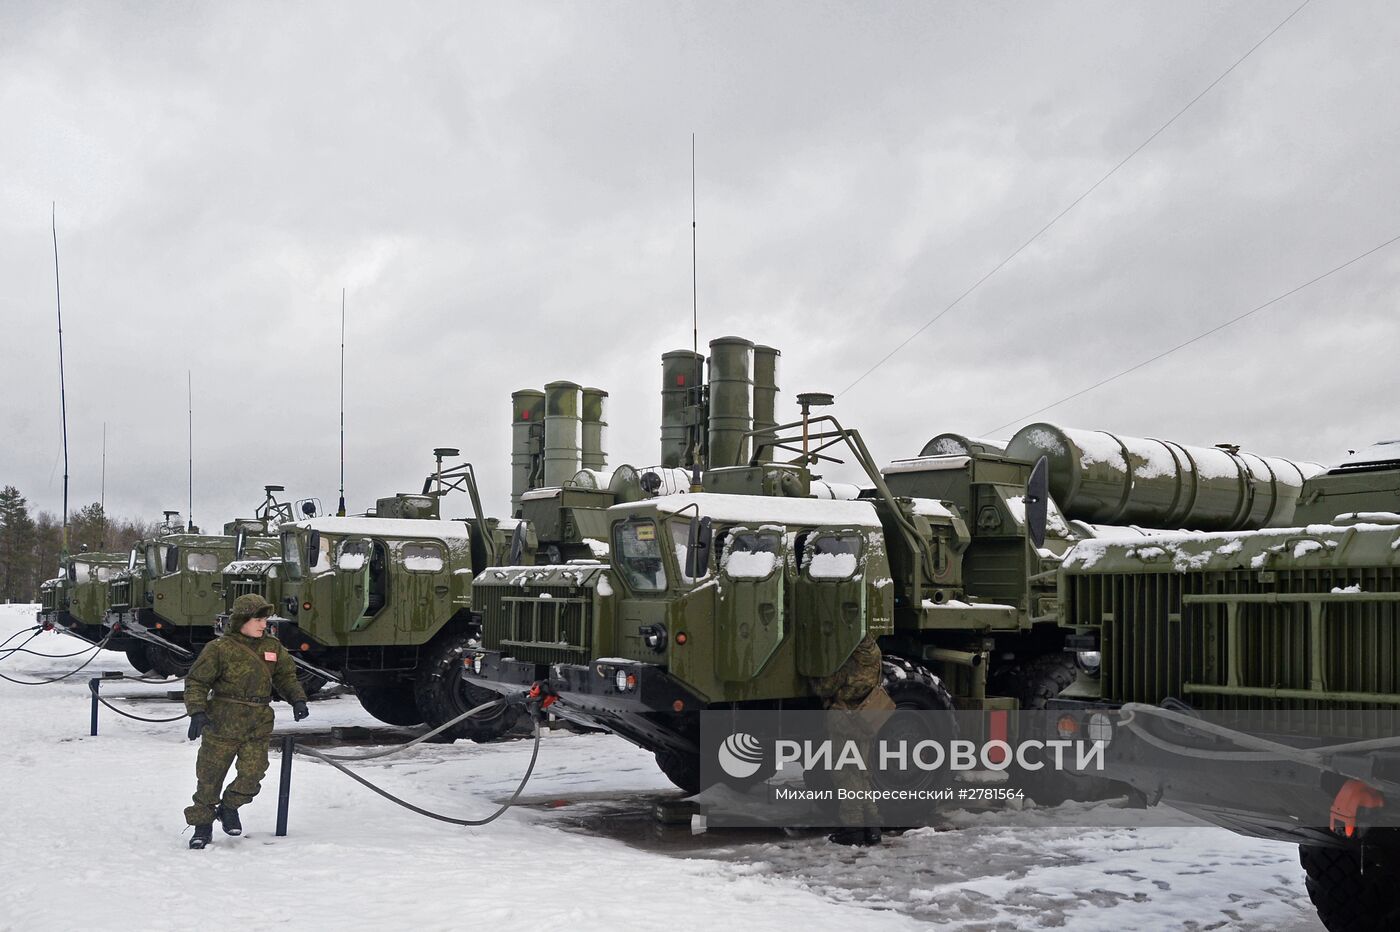 ЗРС С-400 "Триумф" заступила на боевое дежурство